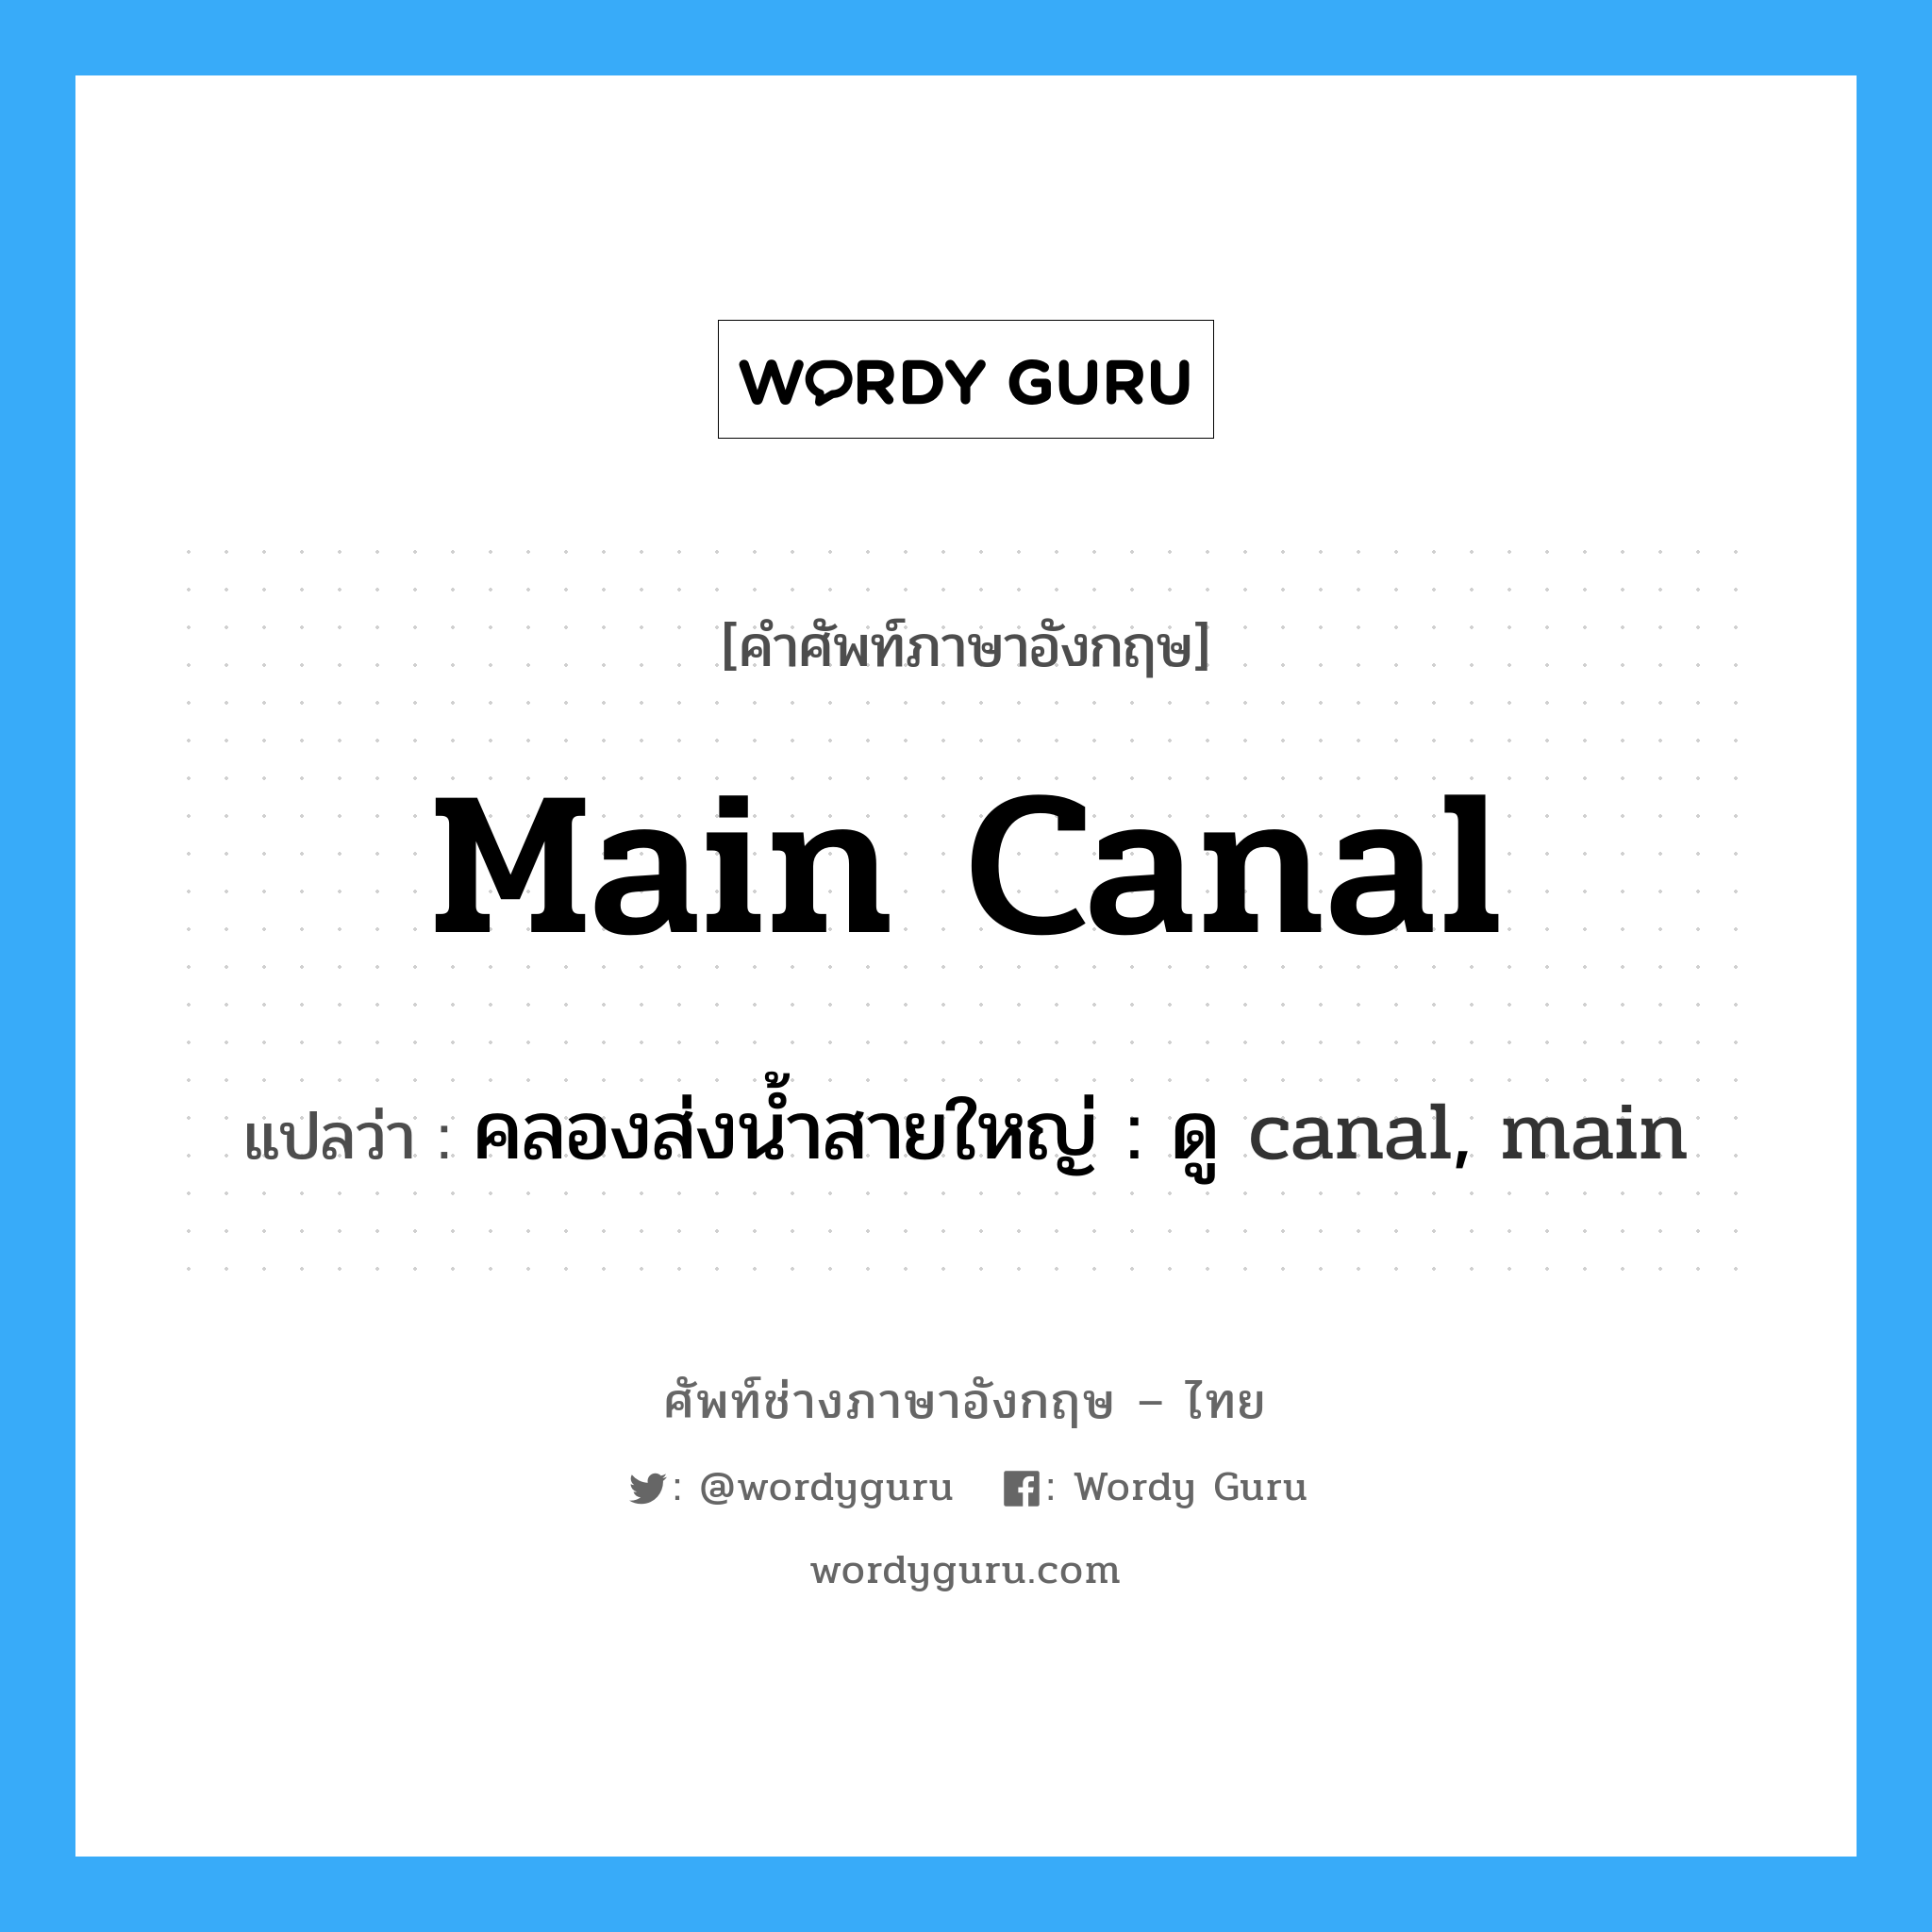 คลองส่งน้ำสายใหญ่ : ดู canal, main ภาษาอังกฤษ?, คำศัพท์ช่างภาษาอังกฤษ - ไทย คลองส่งน้ำสายใหญ่ : ดู canal, main คำศัพท์ภาษาอังกฤษ คลองส่งน้ำสายใหญ่ : ดู canal, main แปลว่า main canal